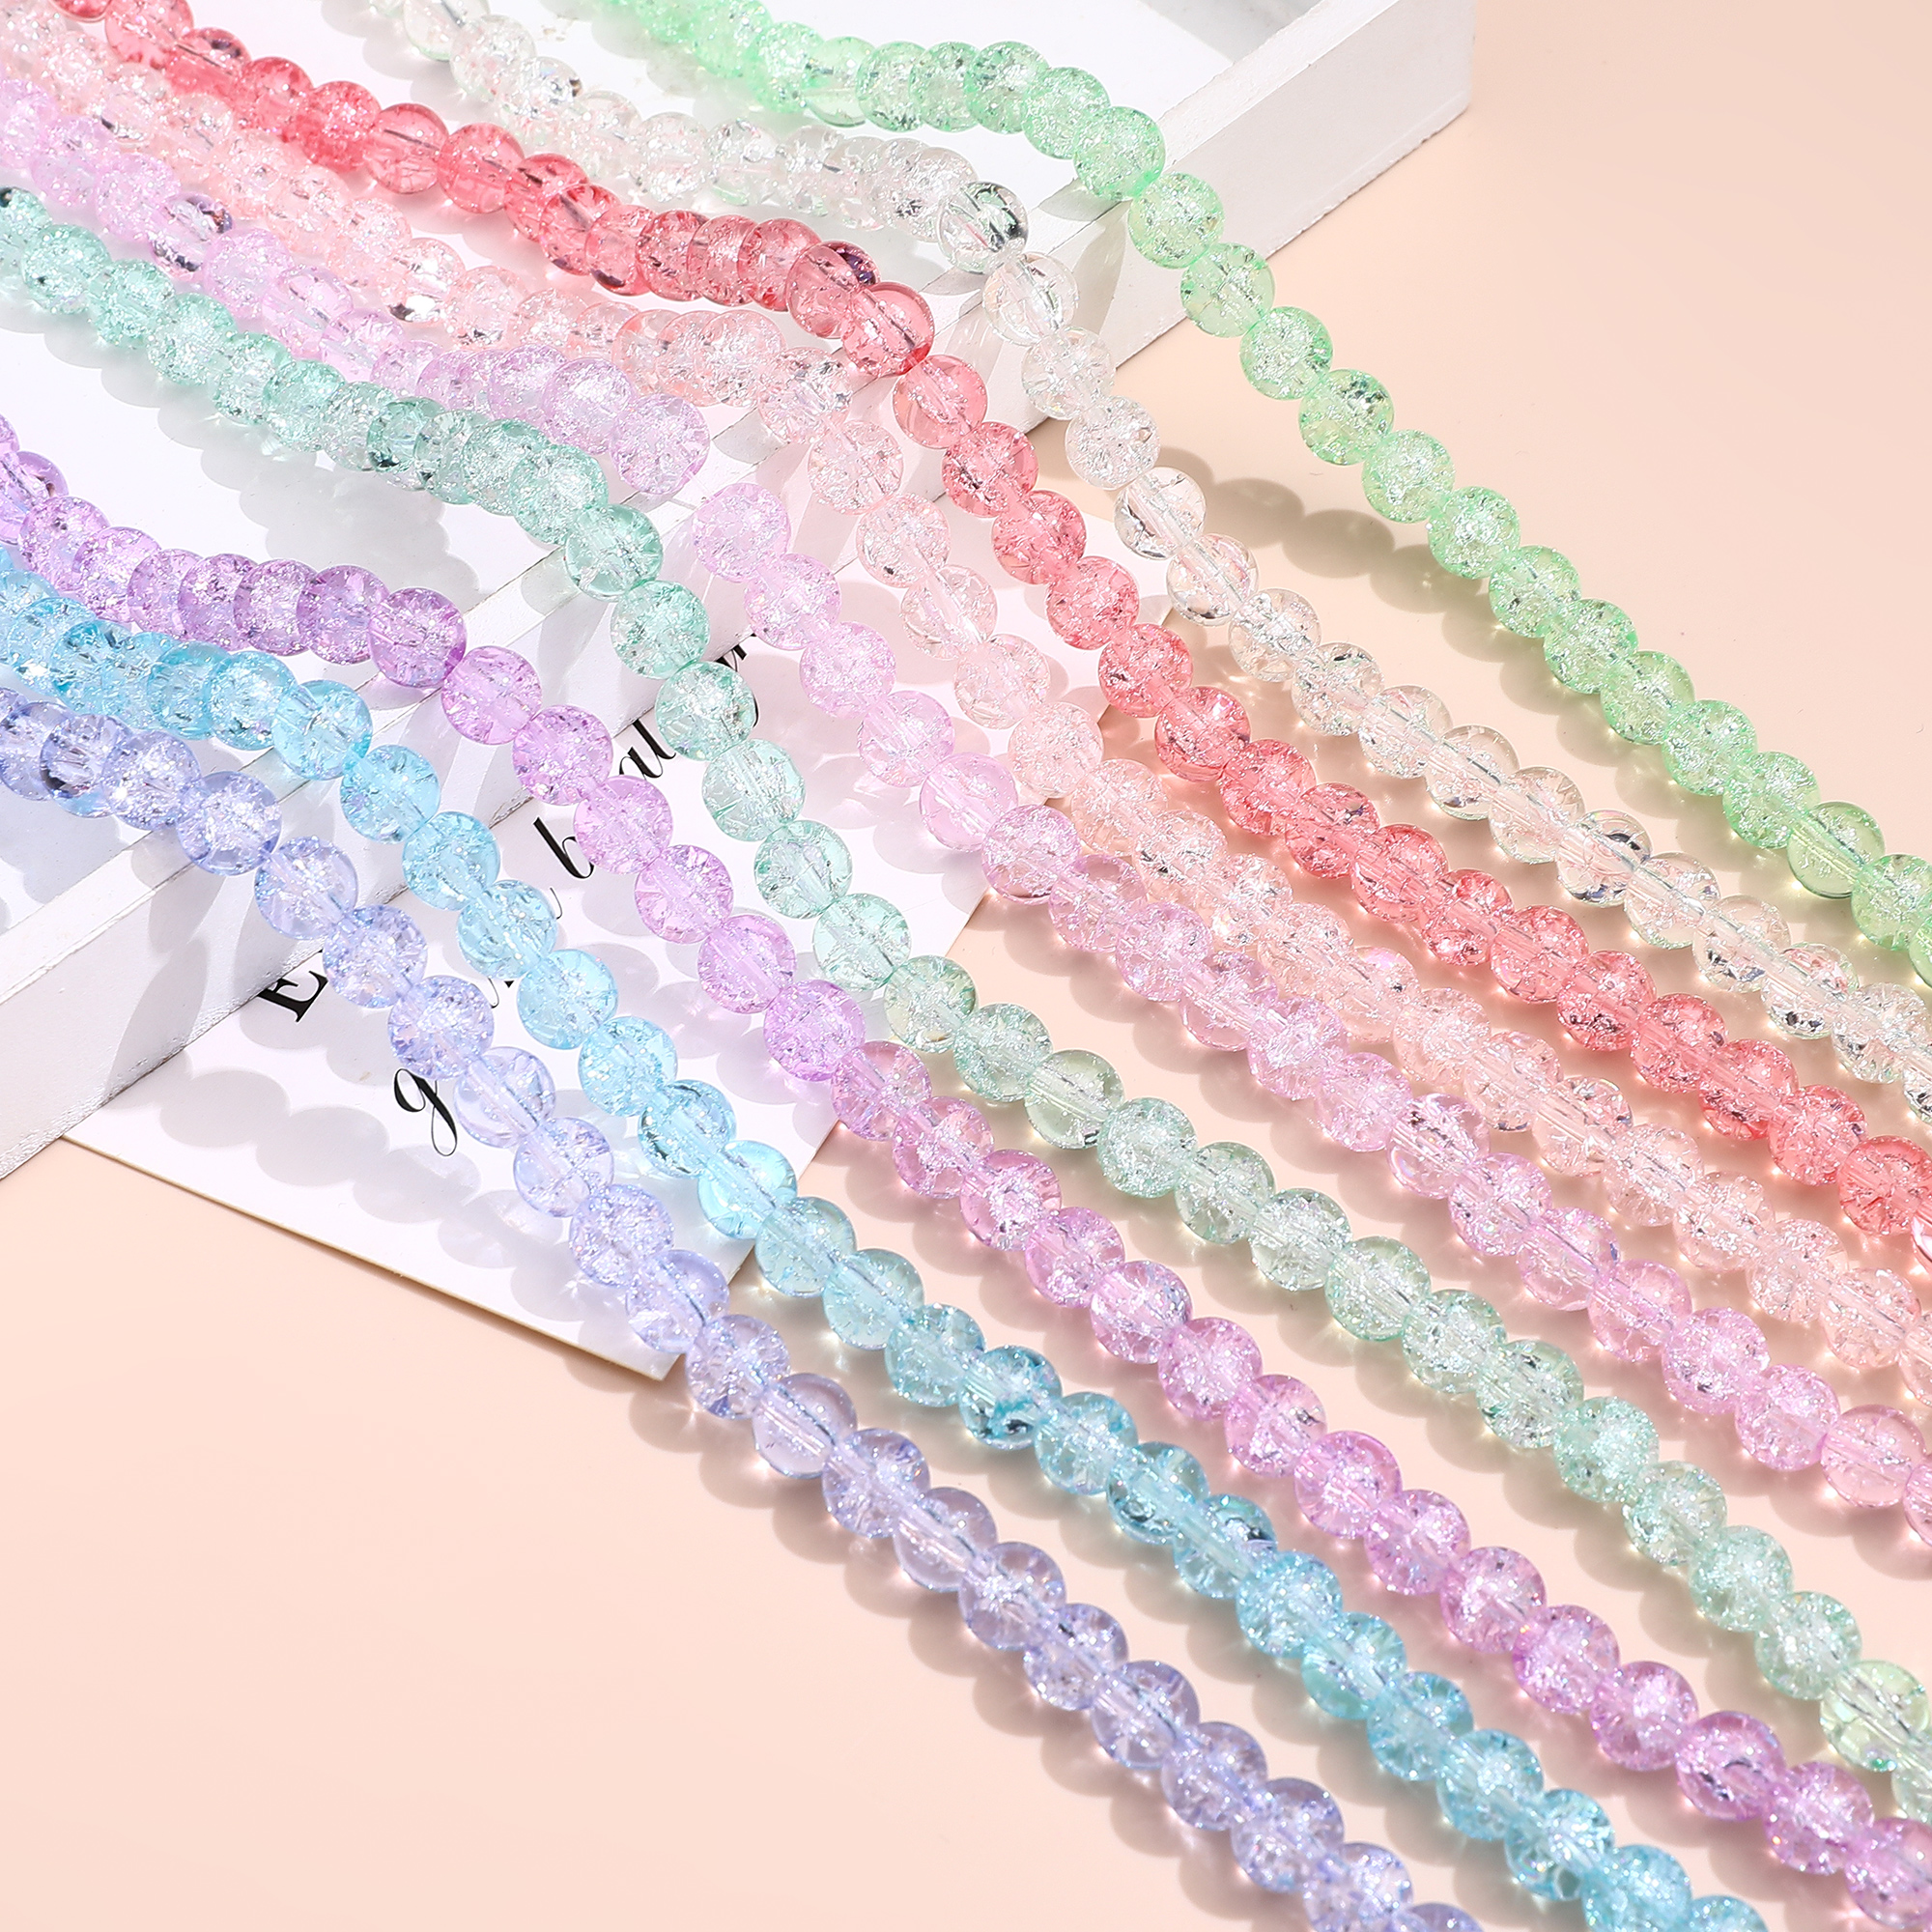 20个8MM仿水晶裂纹彩色玻璃散珠DIY手工耳环饰品手链项链配件材料